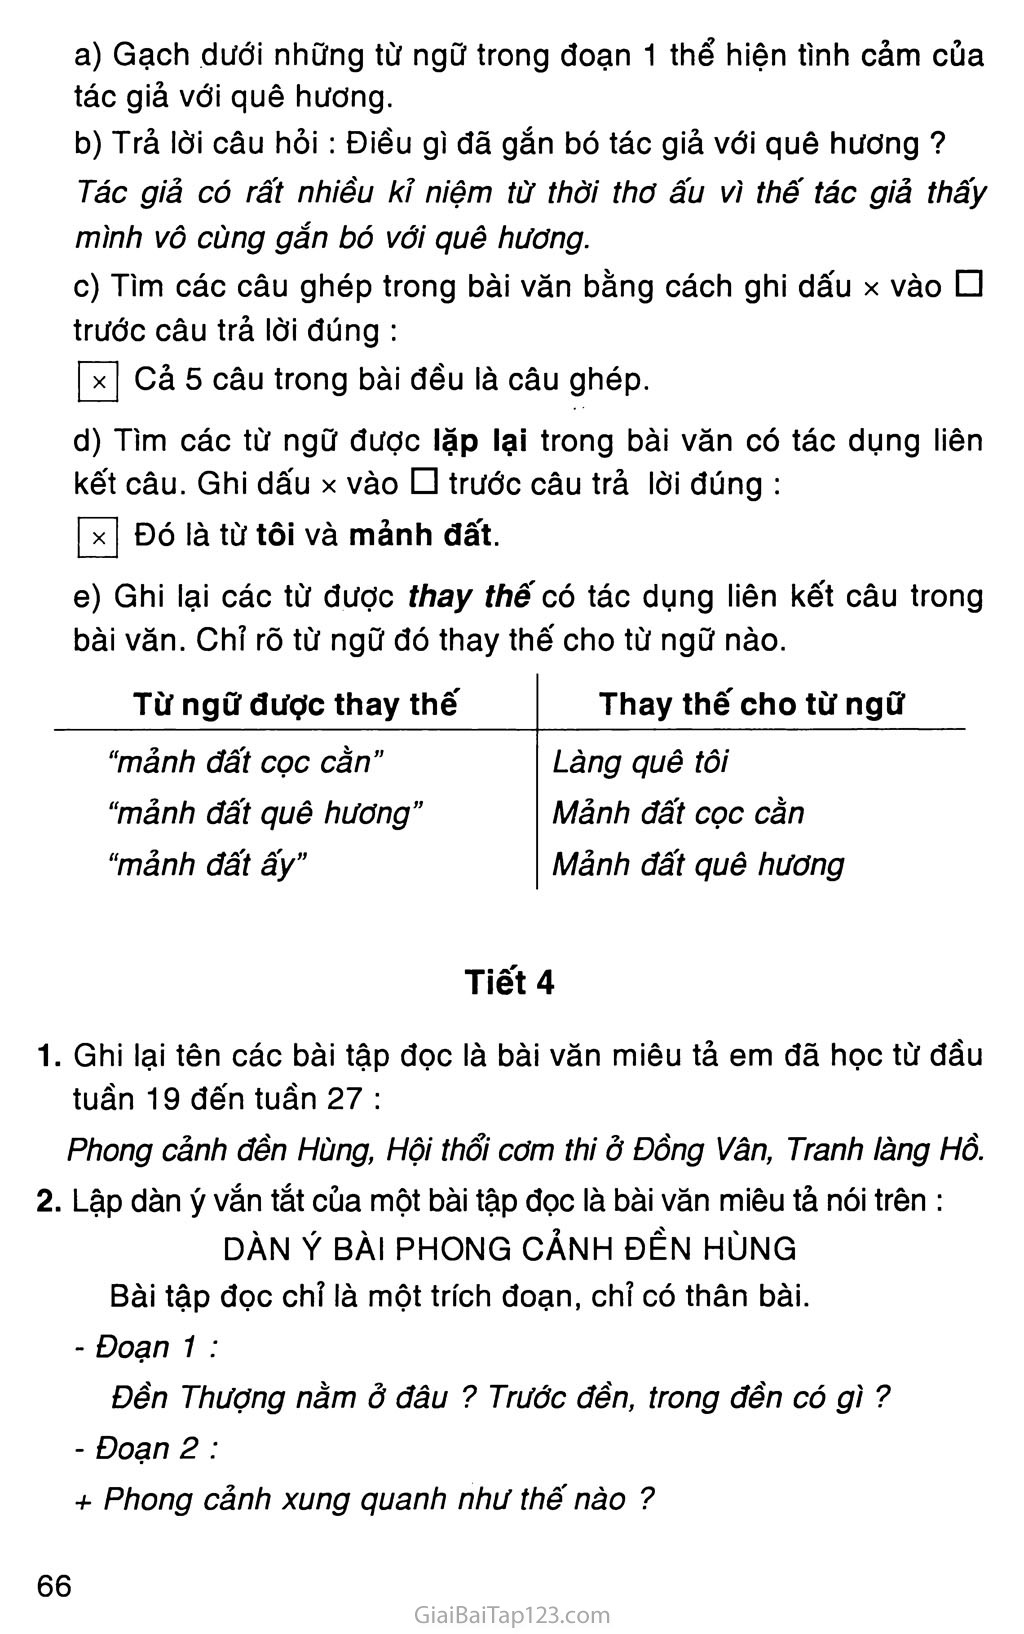 Giải vở bài tập Tiếng Việt lớp 5 tập 2 Tuần 28